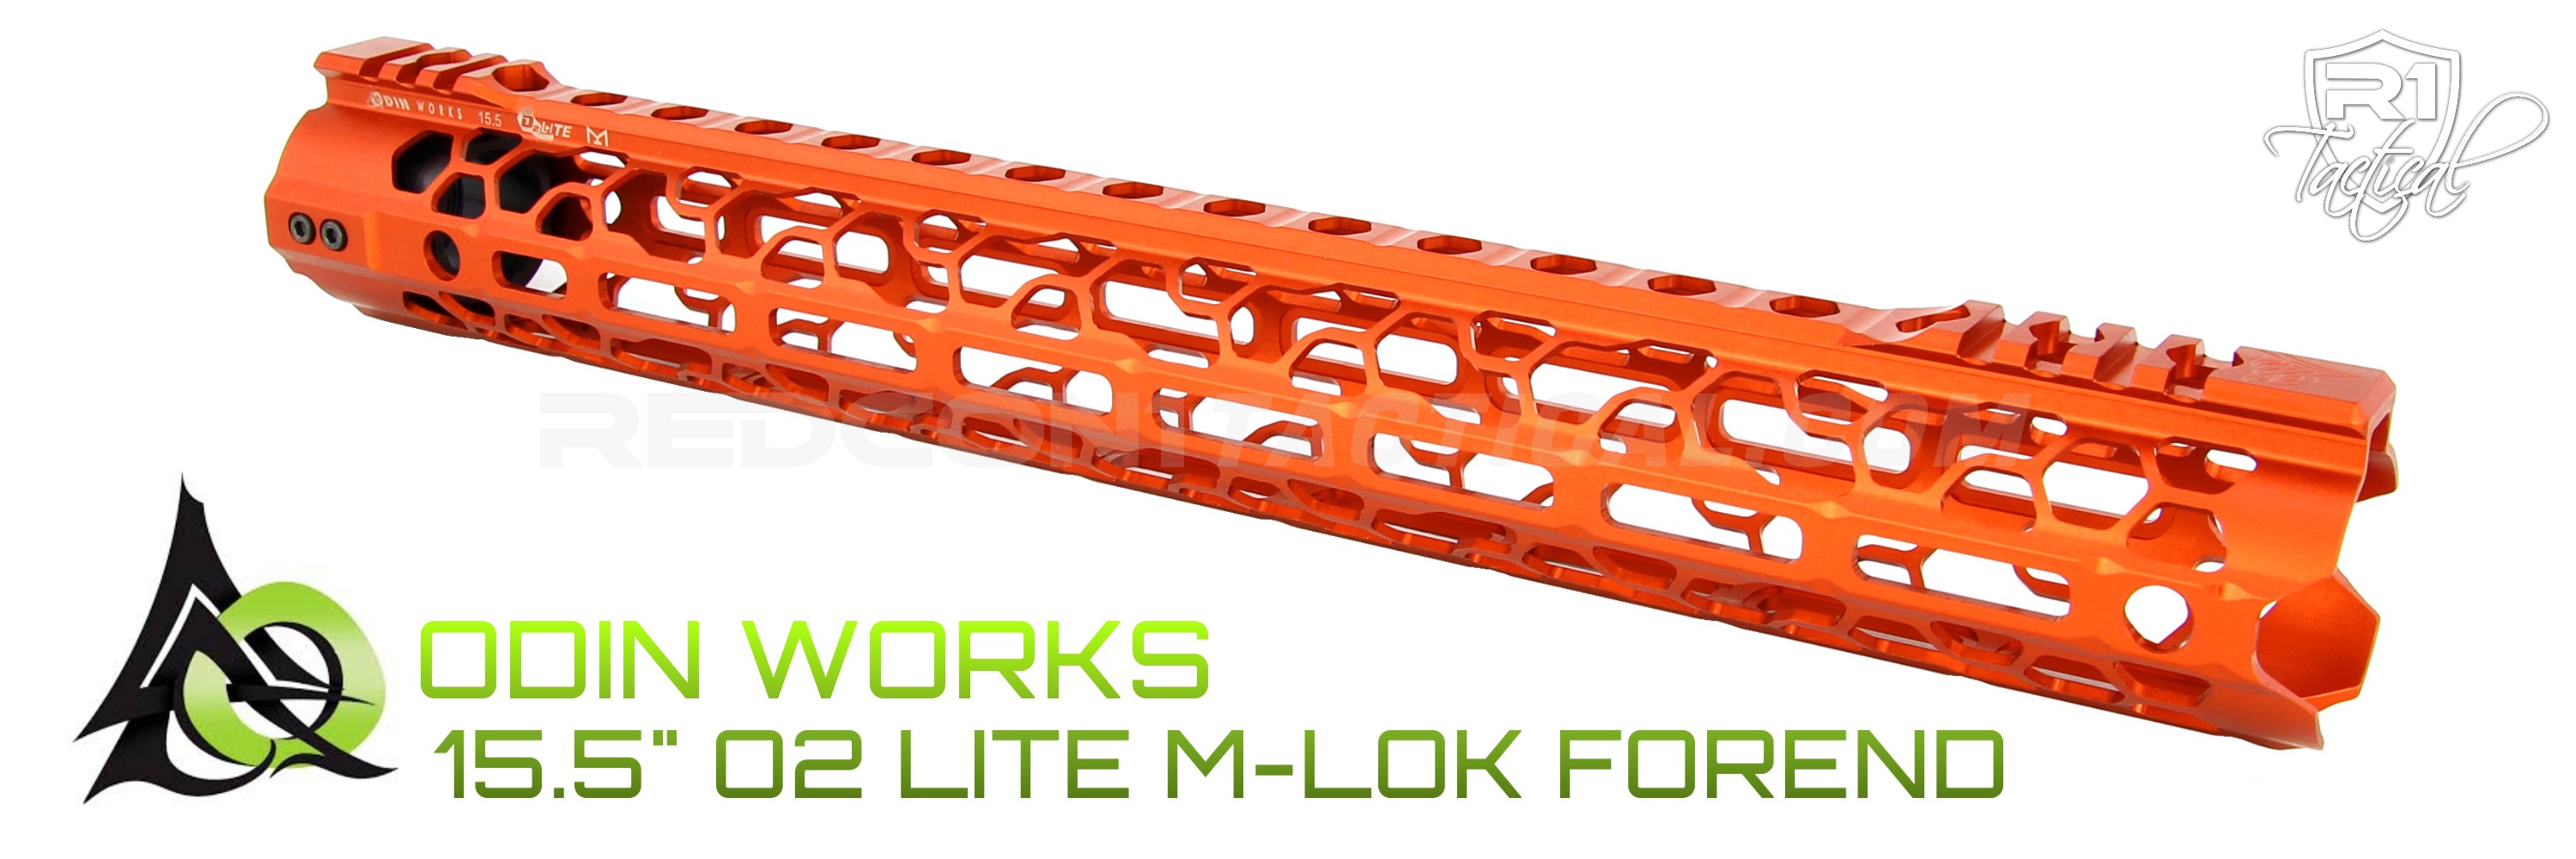 ODIN Works 15.5 O2 Lite M-LOK Forend - Orange | R1 Tactical